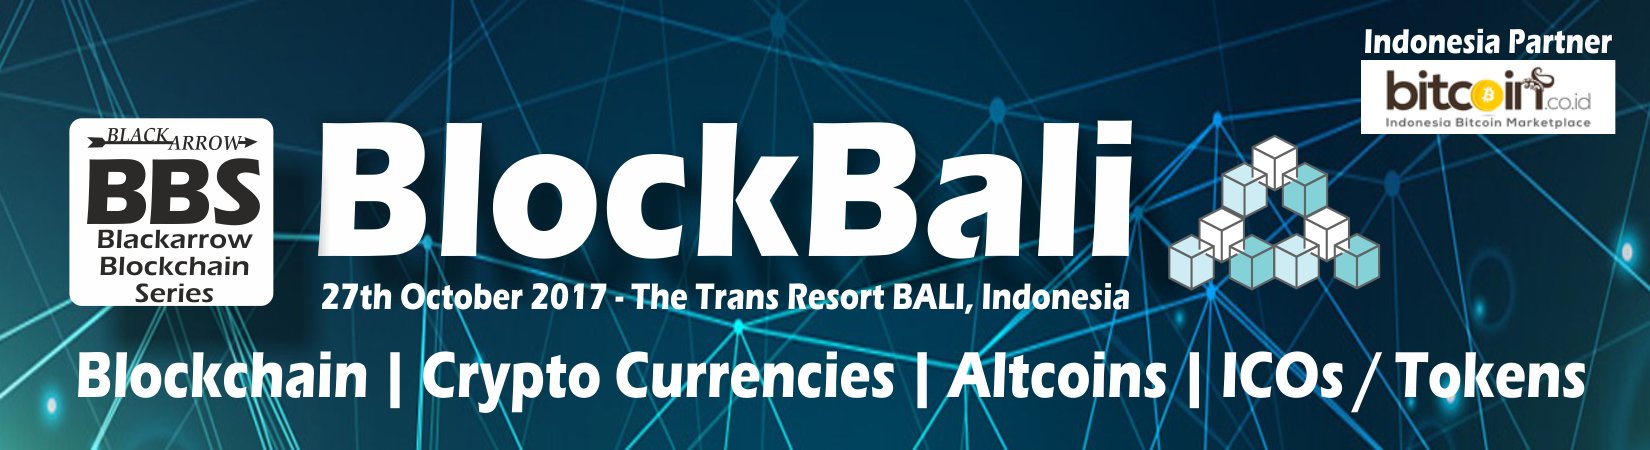 BlockBali Blockchain Conference